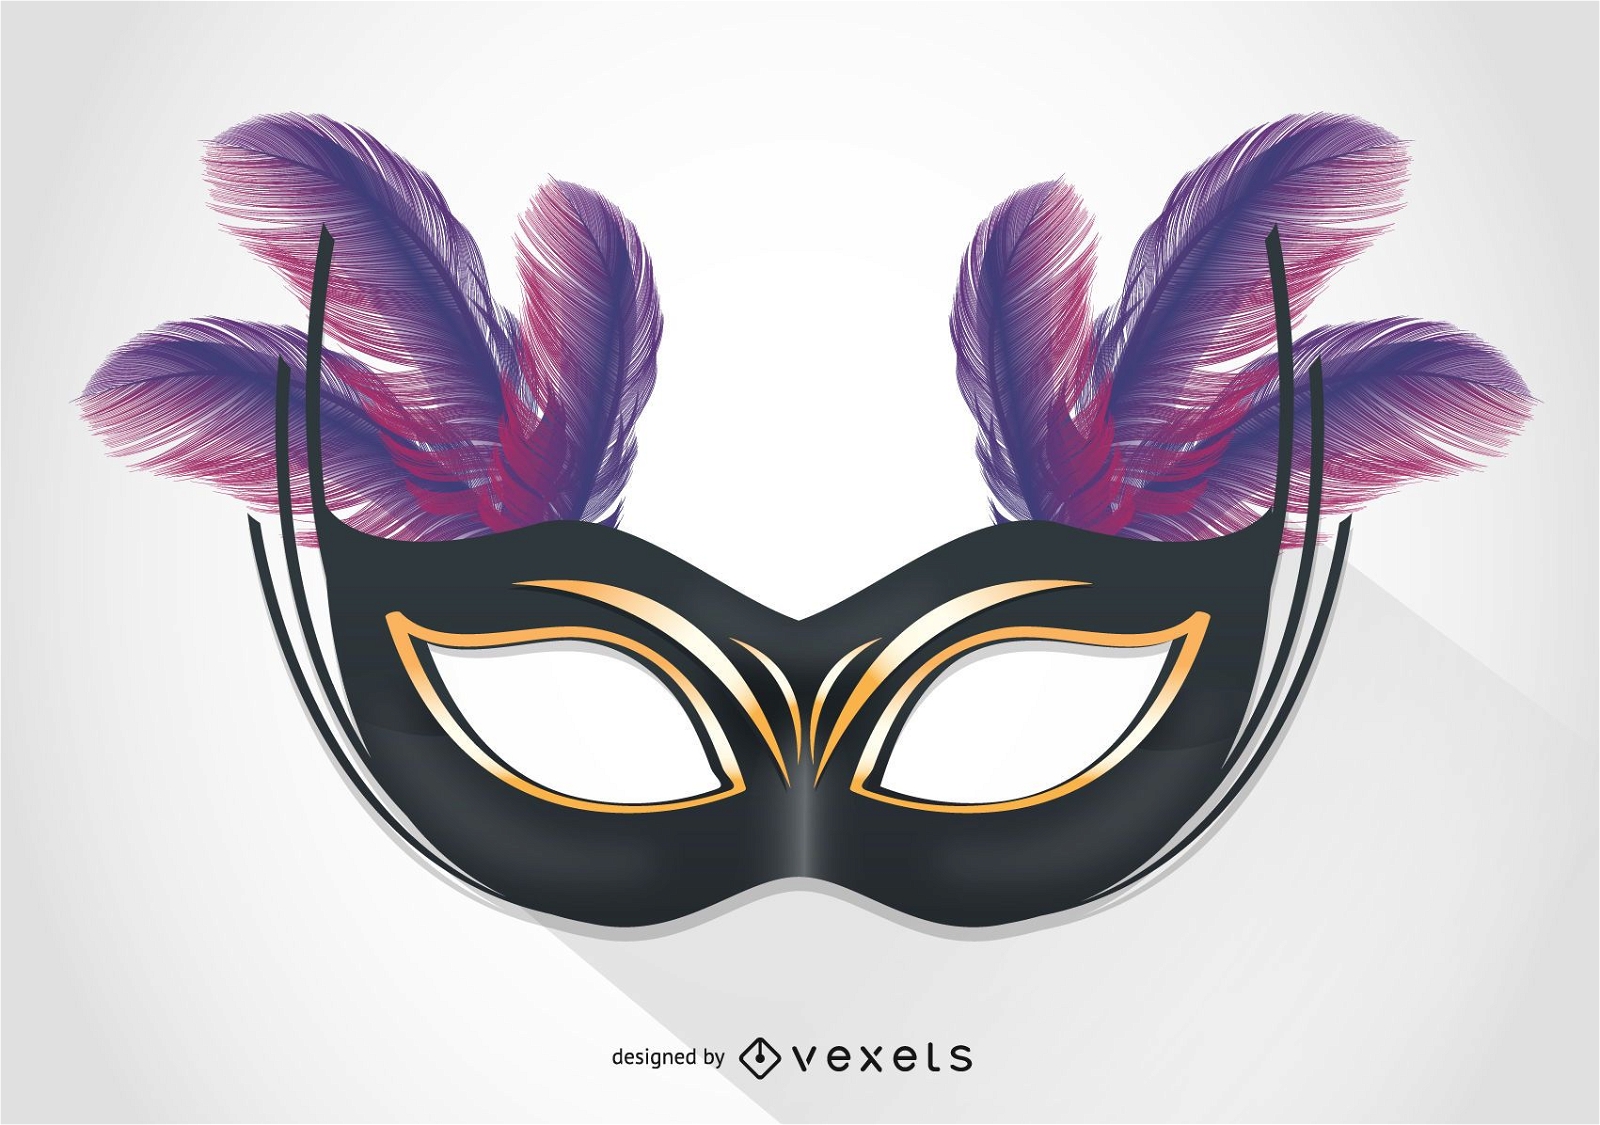 Máscaras de Carnaval, Venecia  Venetian carnival masks, Carnival masks,  Masks masquerade